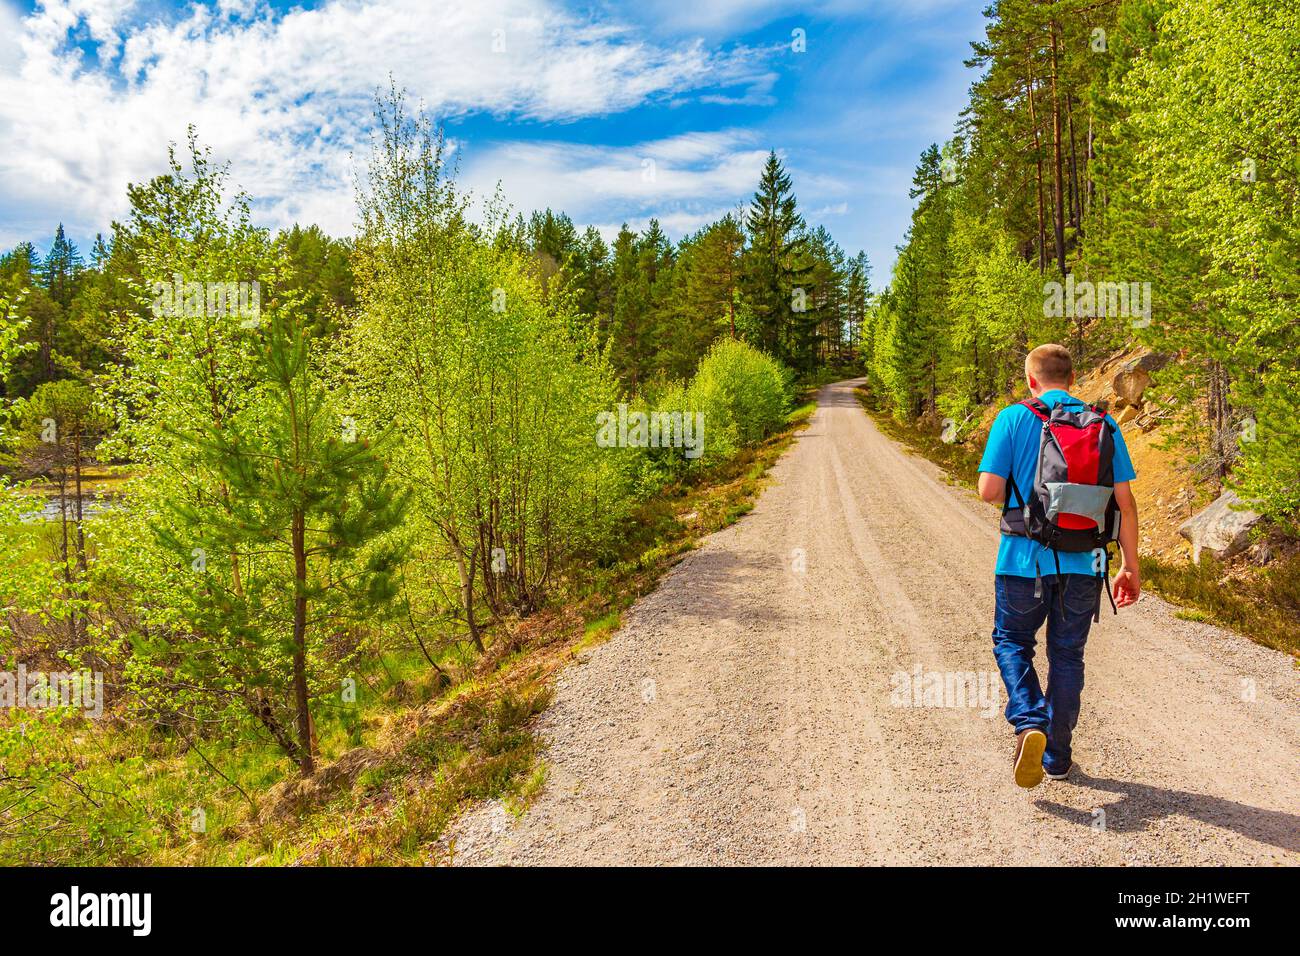 Les jeunes randonneurs longent un sentier de randonnée dans un paysage panoramique entre les forêts et les montagnes de Treungen Nissedal Norvège. Banque D'Images